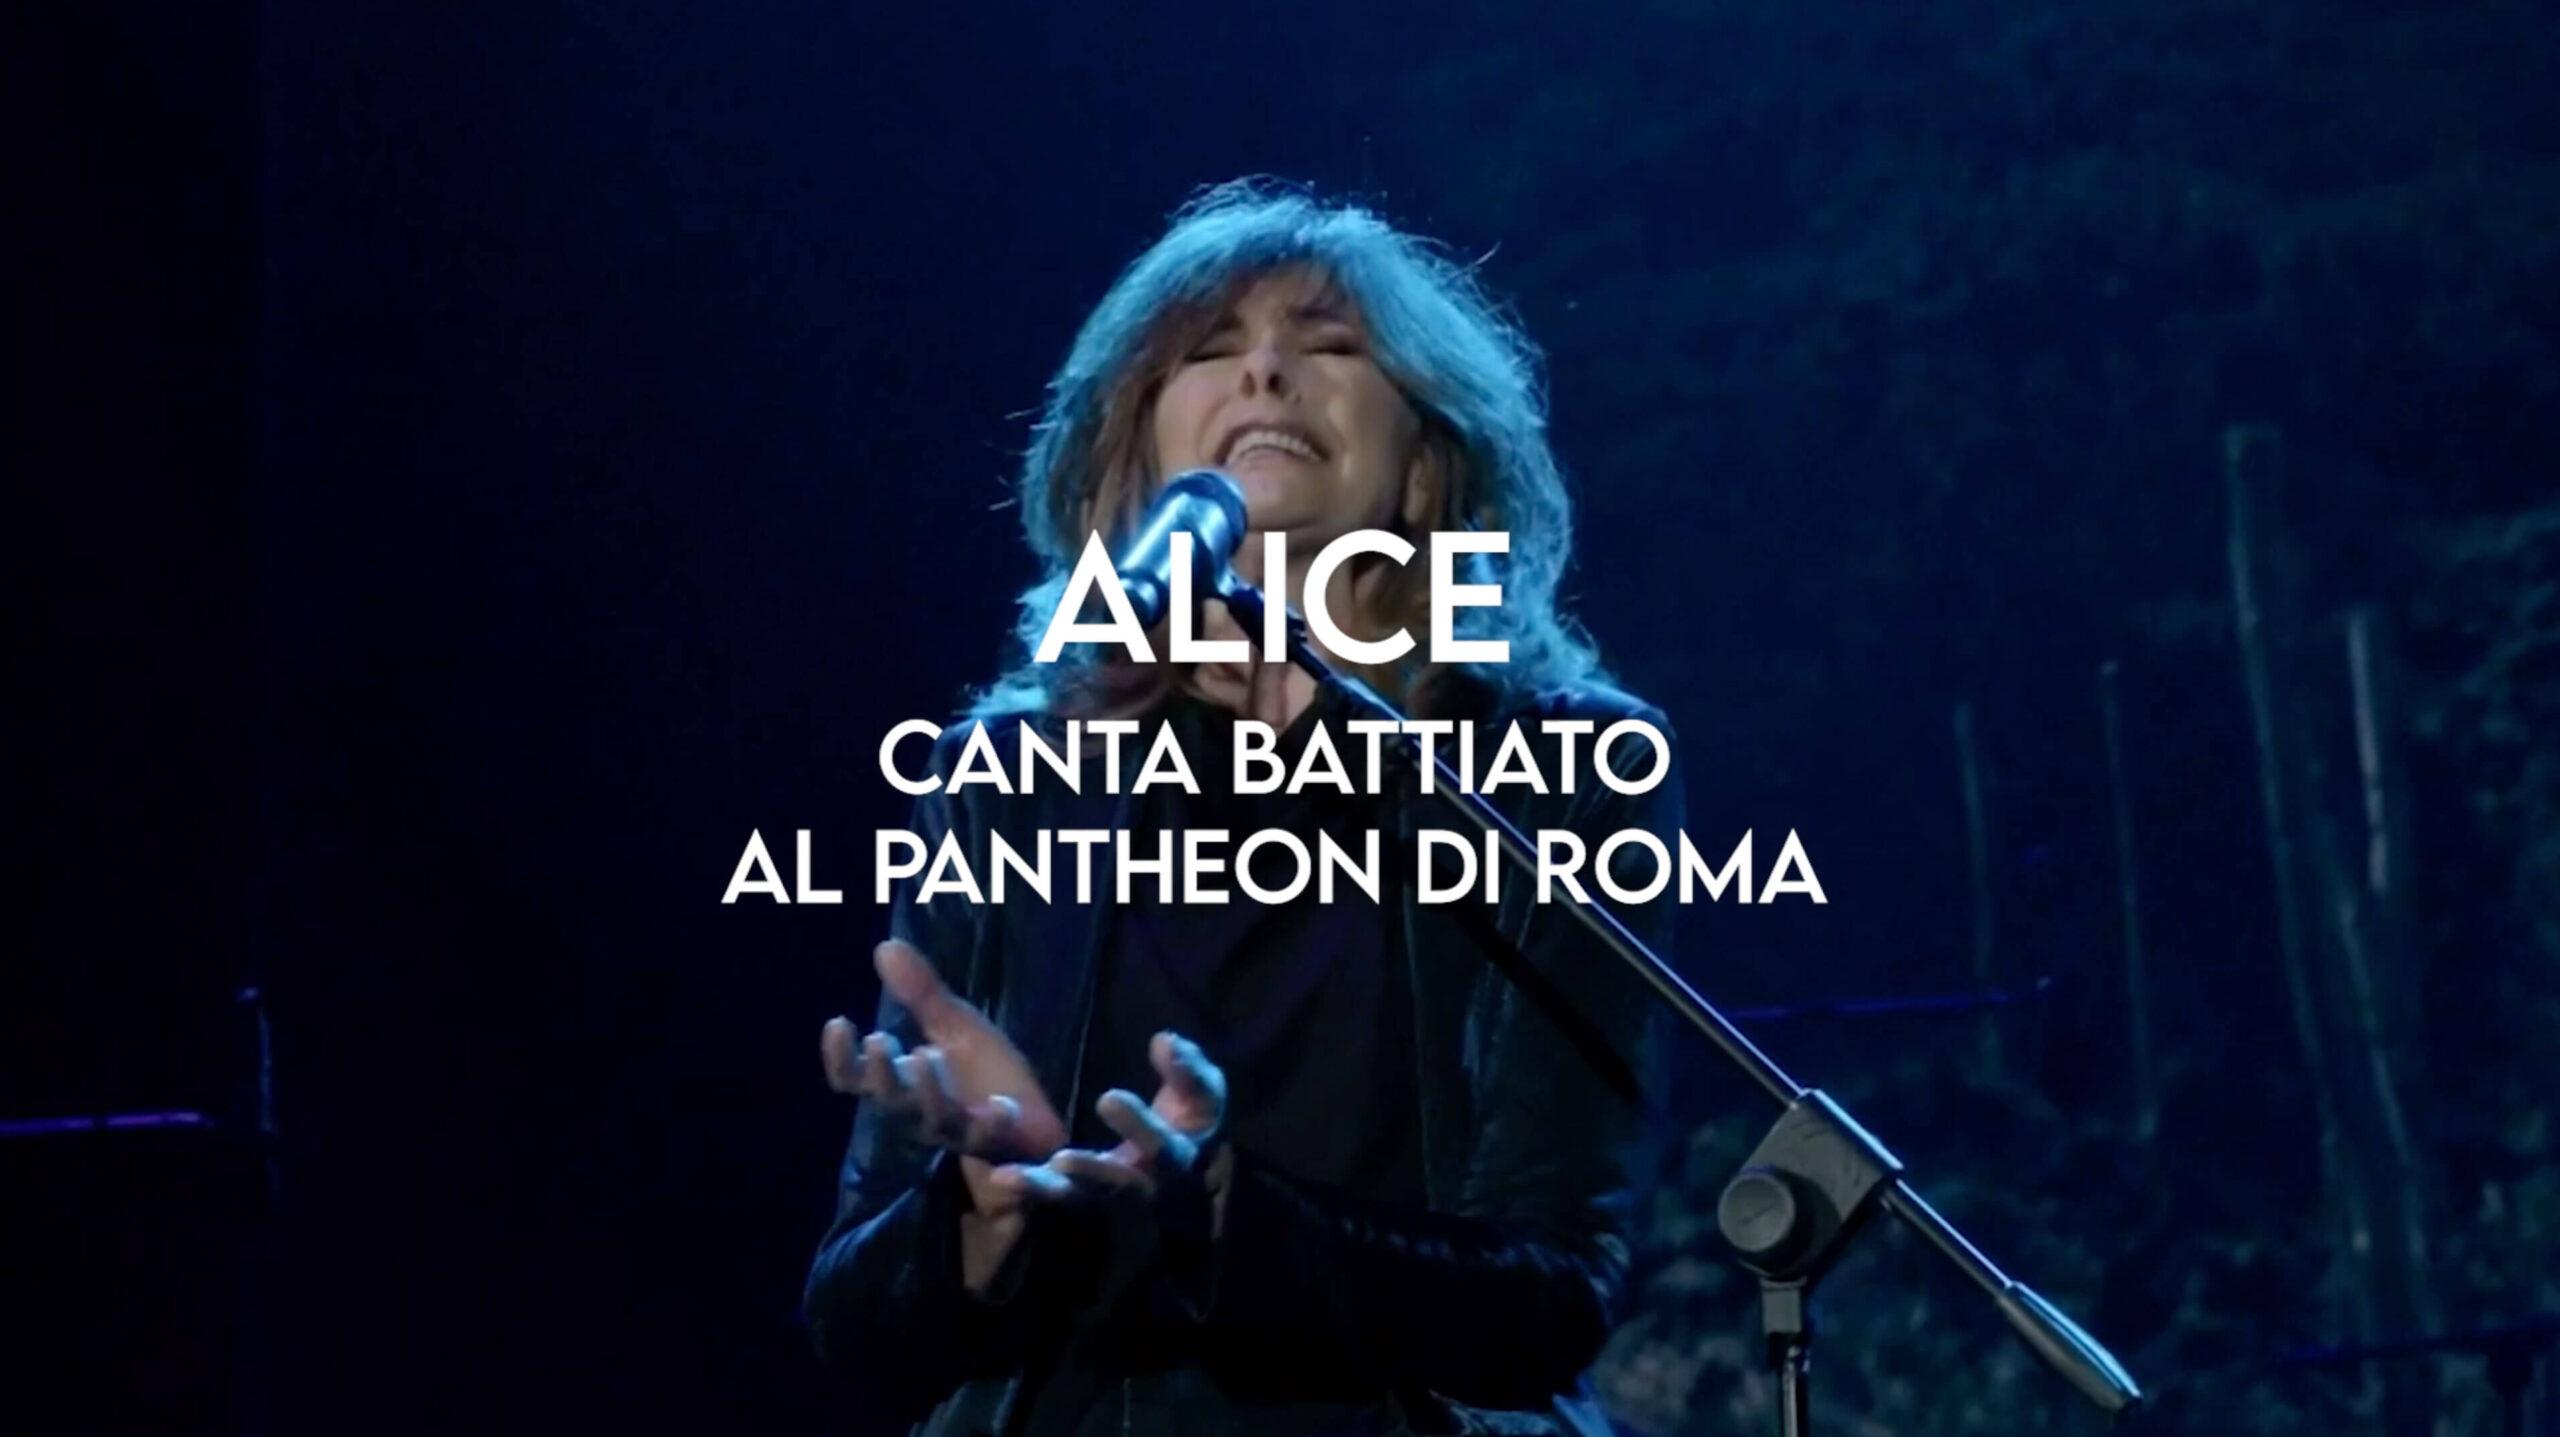 Alice canta Battiato al Pantheon di Roma